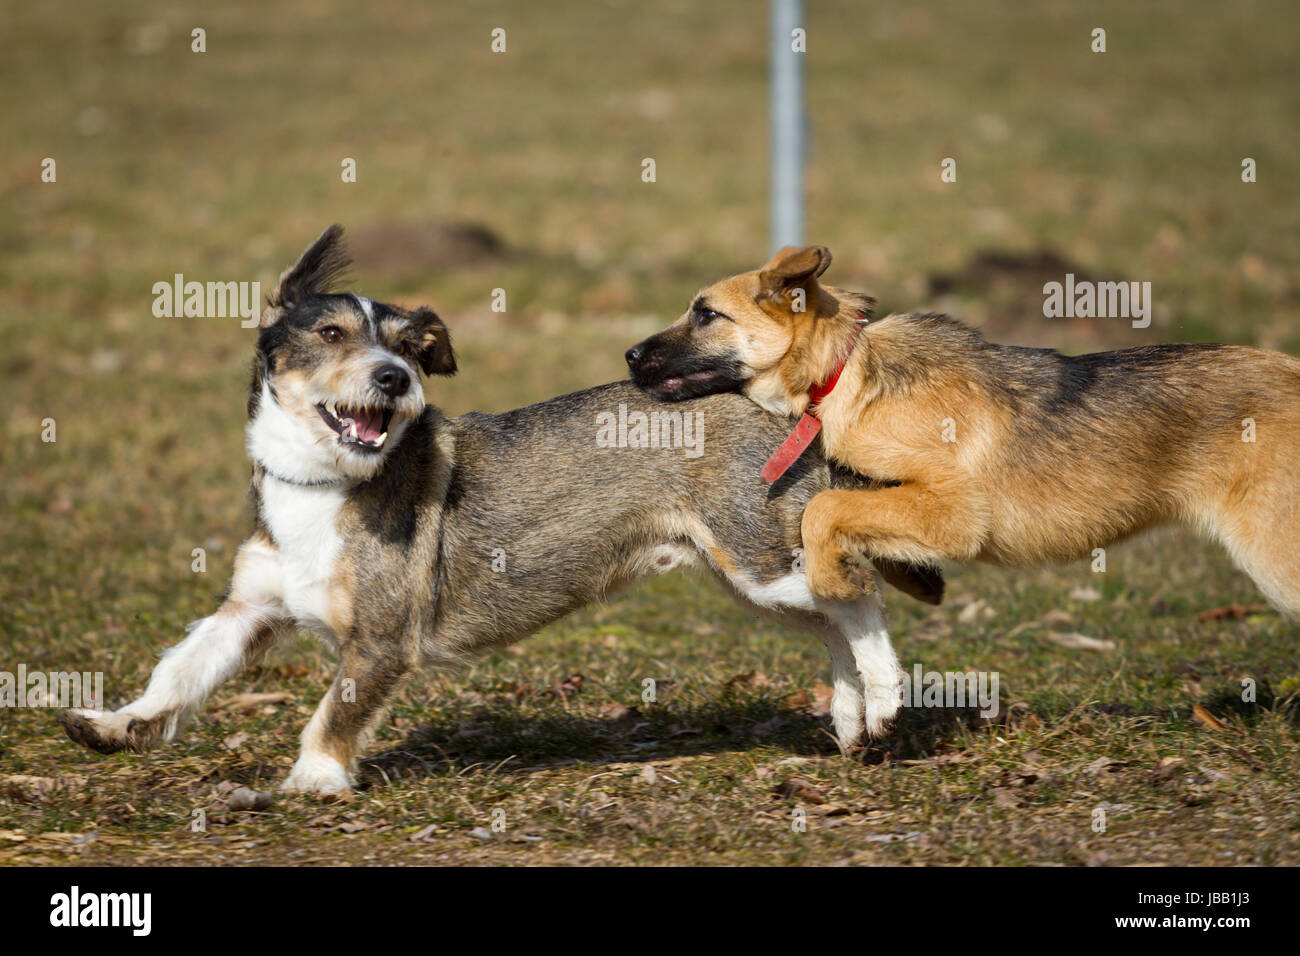 Zwei Hunde beim wilden Spiel auf einer Hundewiese, der eine ist ein  Schäferhund Welpe der andere ein Terrier/Dackel Mix Stock Photo - Alamy